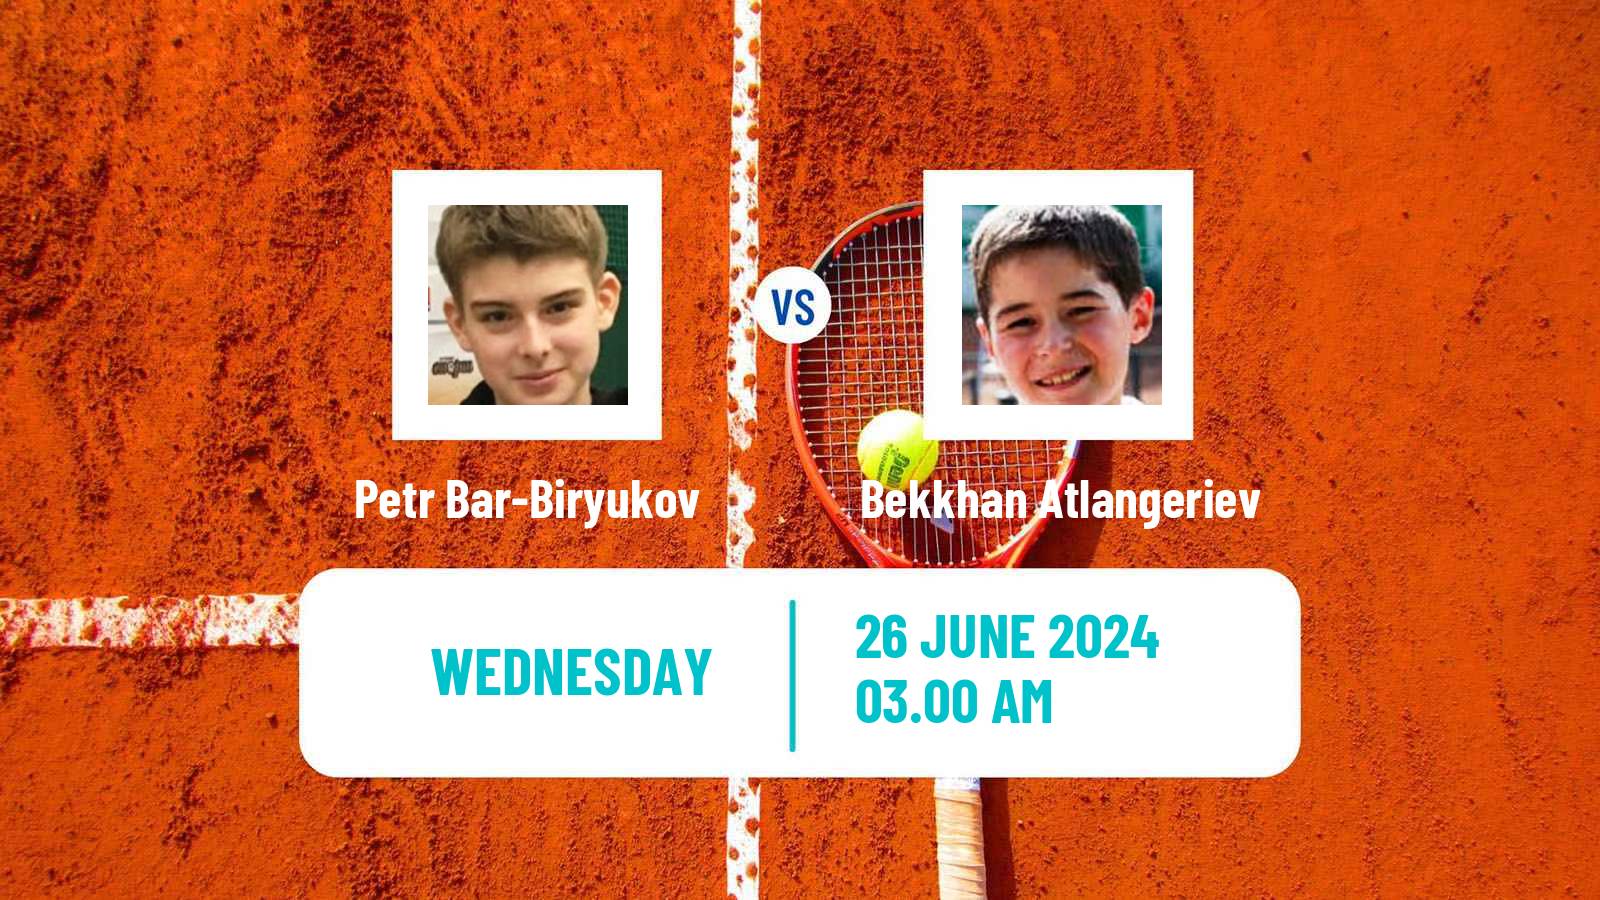 Tennis ITF M15 Ust Kamenogorsk Men Petr Bar-Biryukov - Bekkhan Atlangeriev